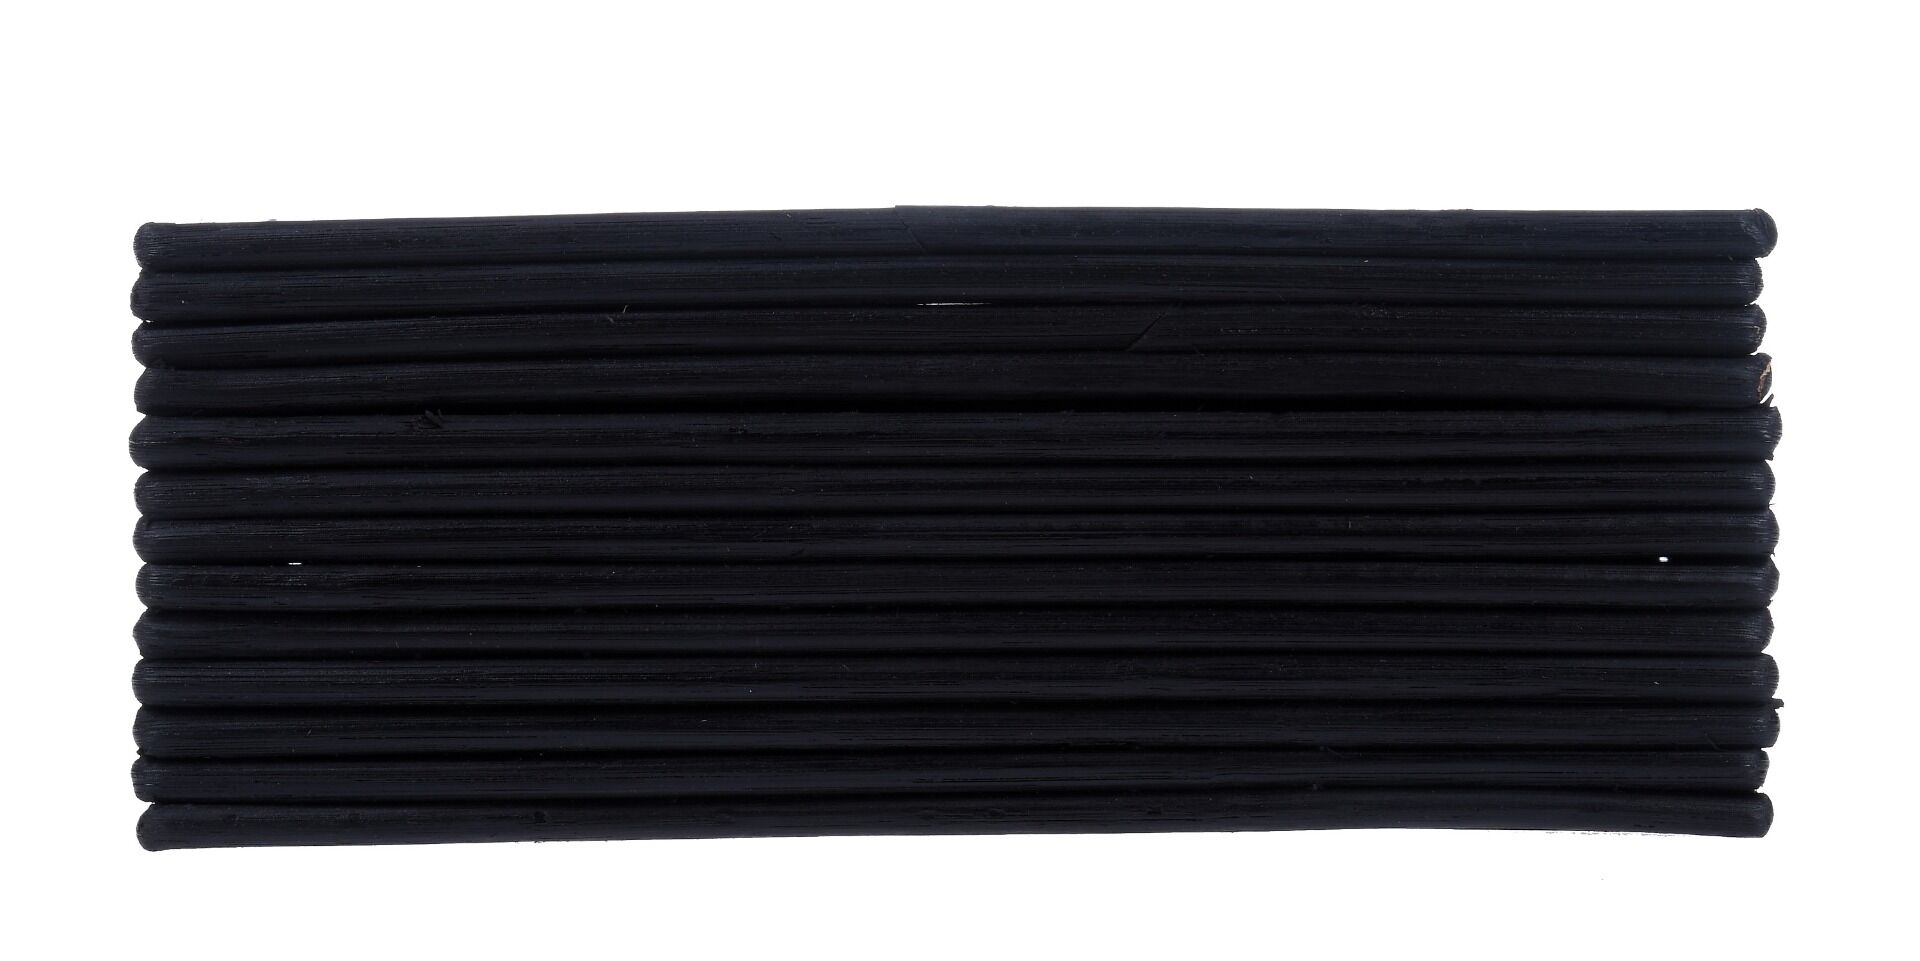 Pojemnik na chusteczki Durban Black 27x17x10 cm